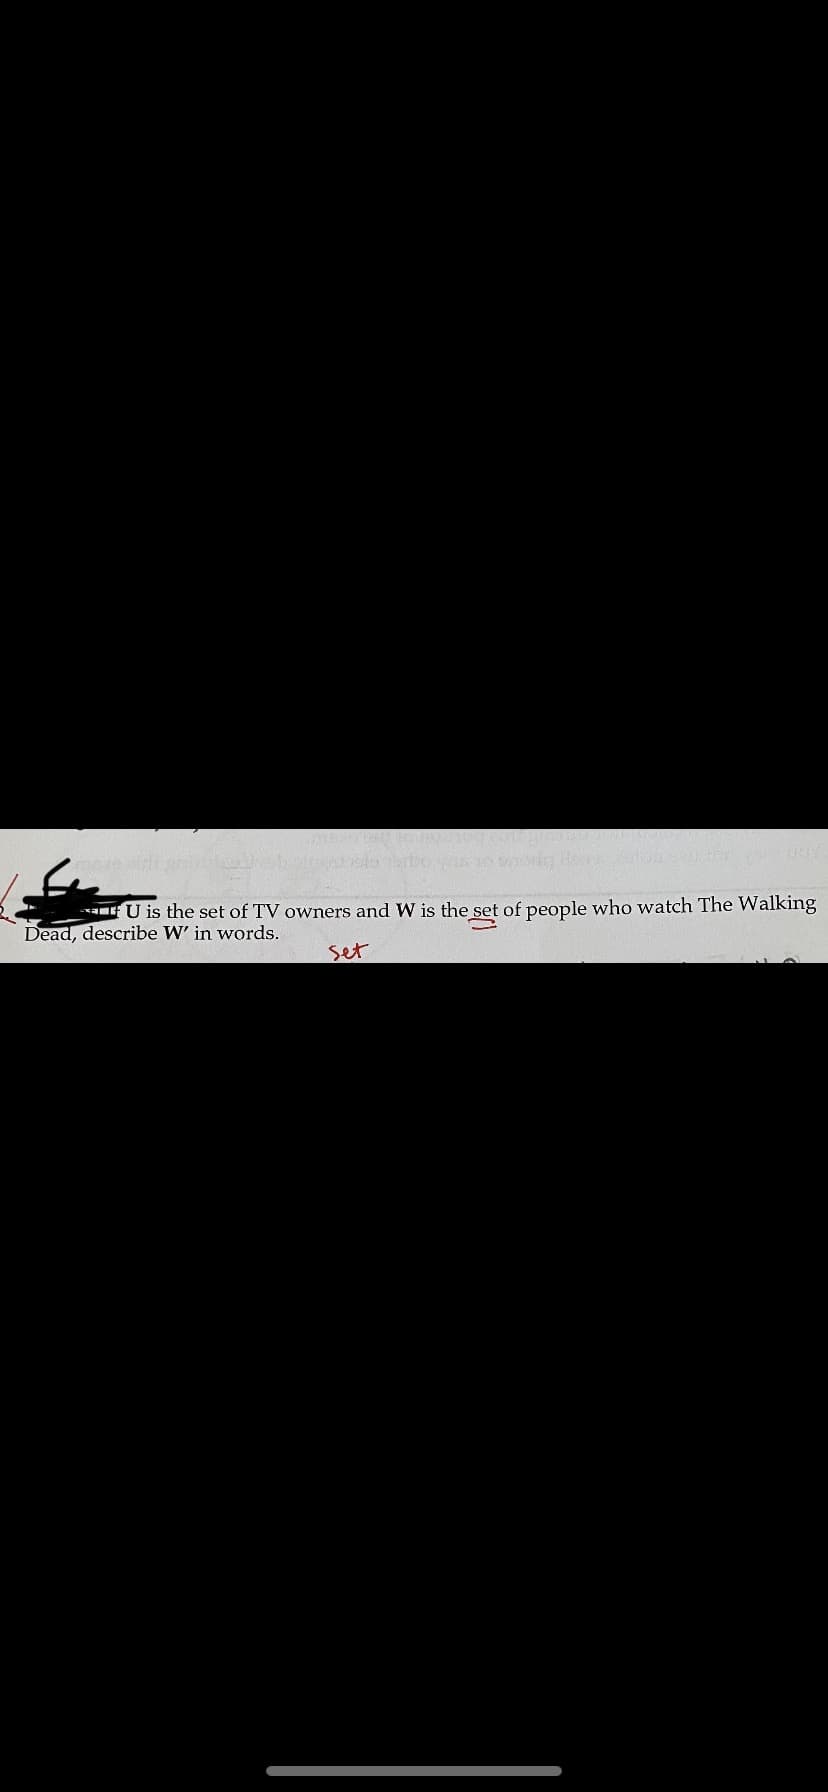 U is the set of TV owners and W is the set of people who watch The Walking
Dead, describe W' in words.
set
